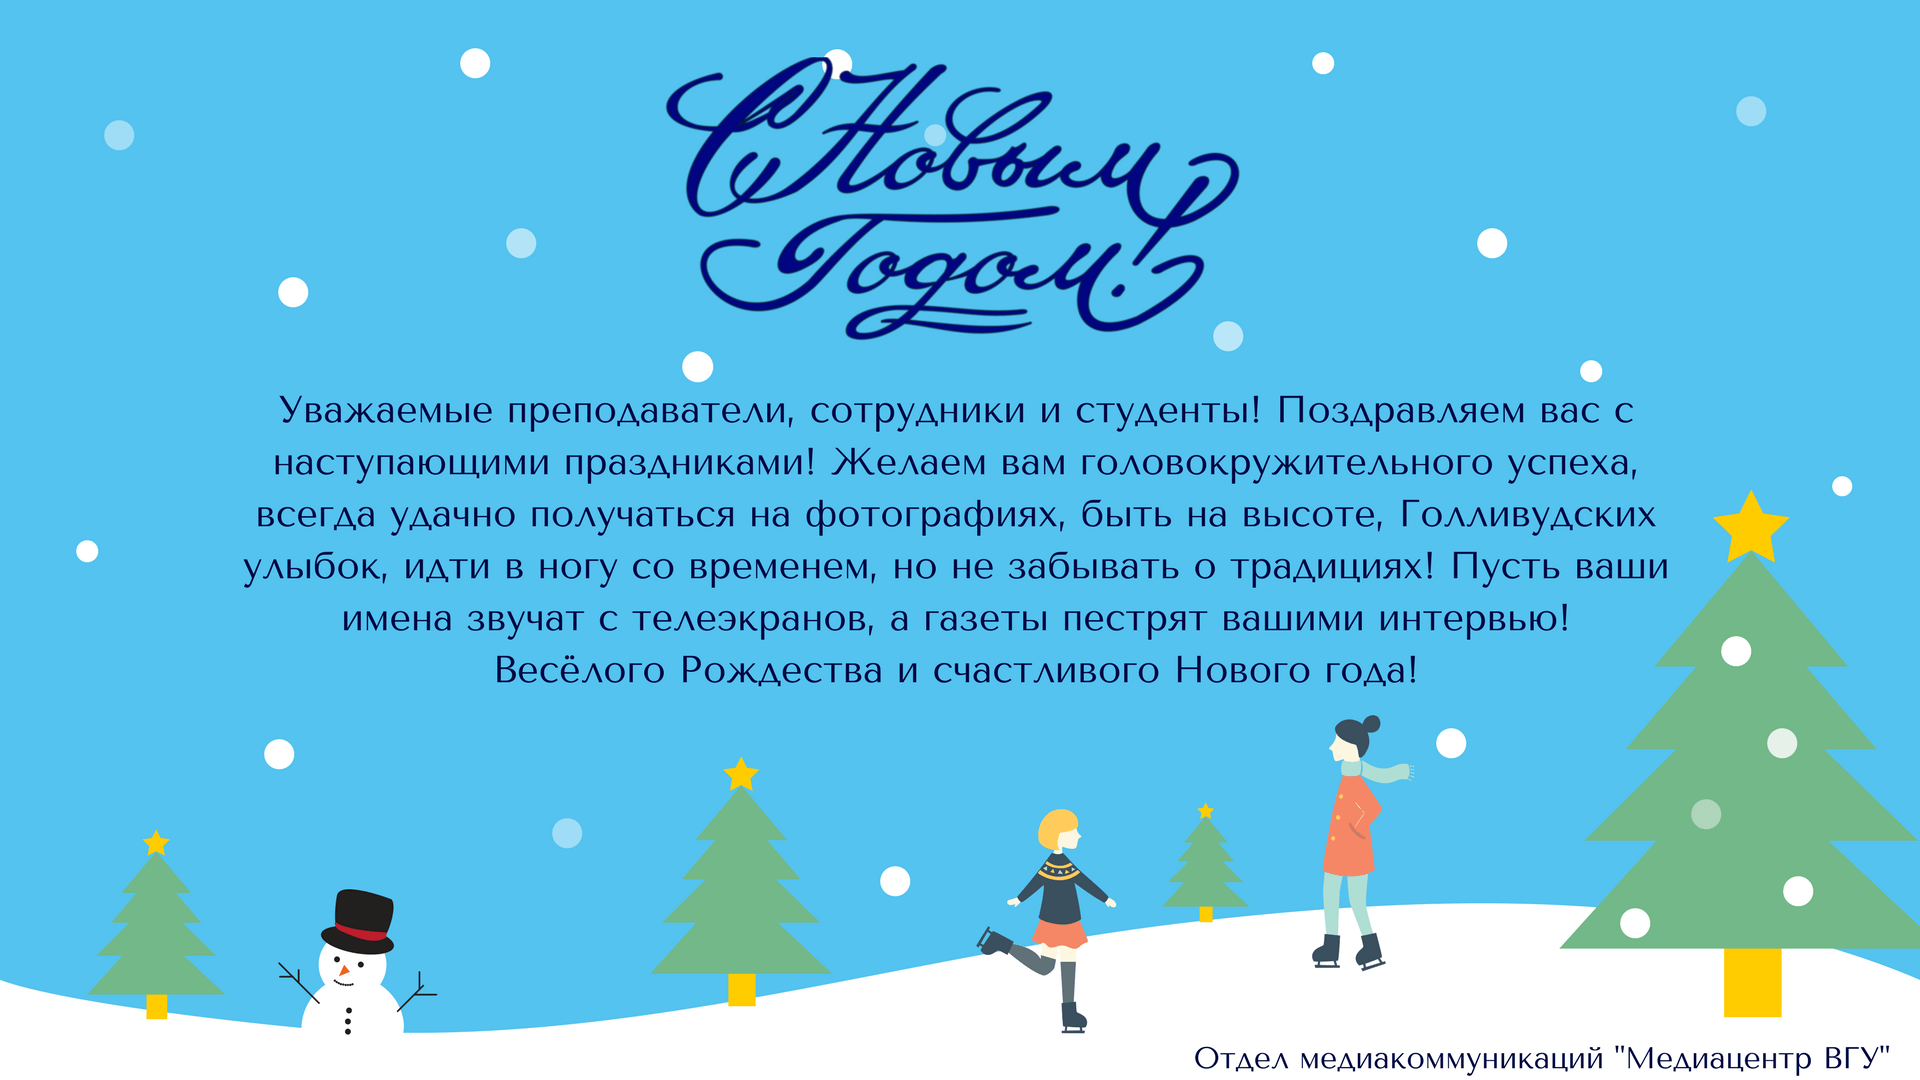 Поздравляем читателей информационного портала smolgazeta.ru с Новым годом!